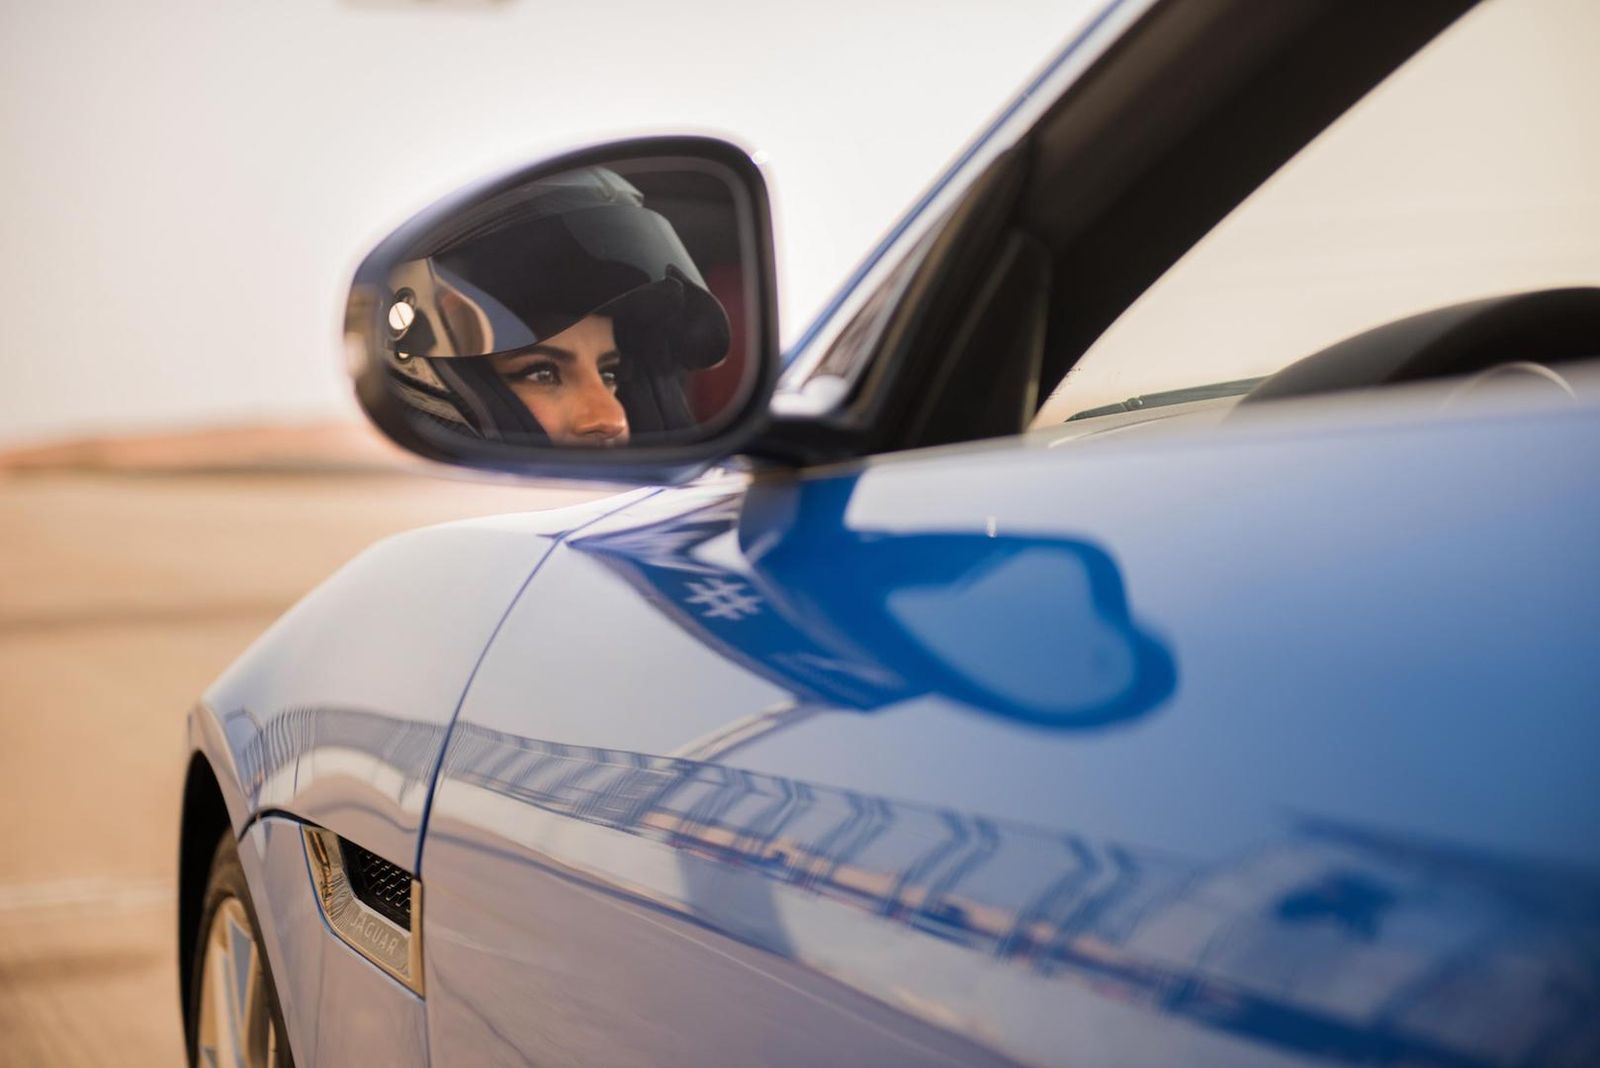 jaguar f-type saudi arabia women driving ban 3